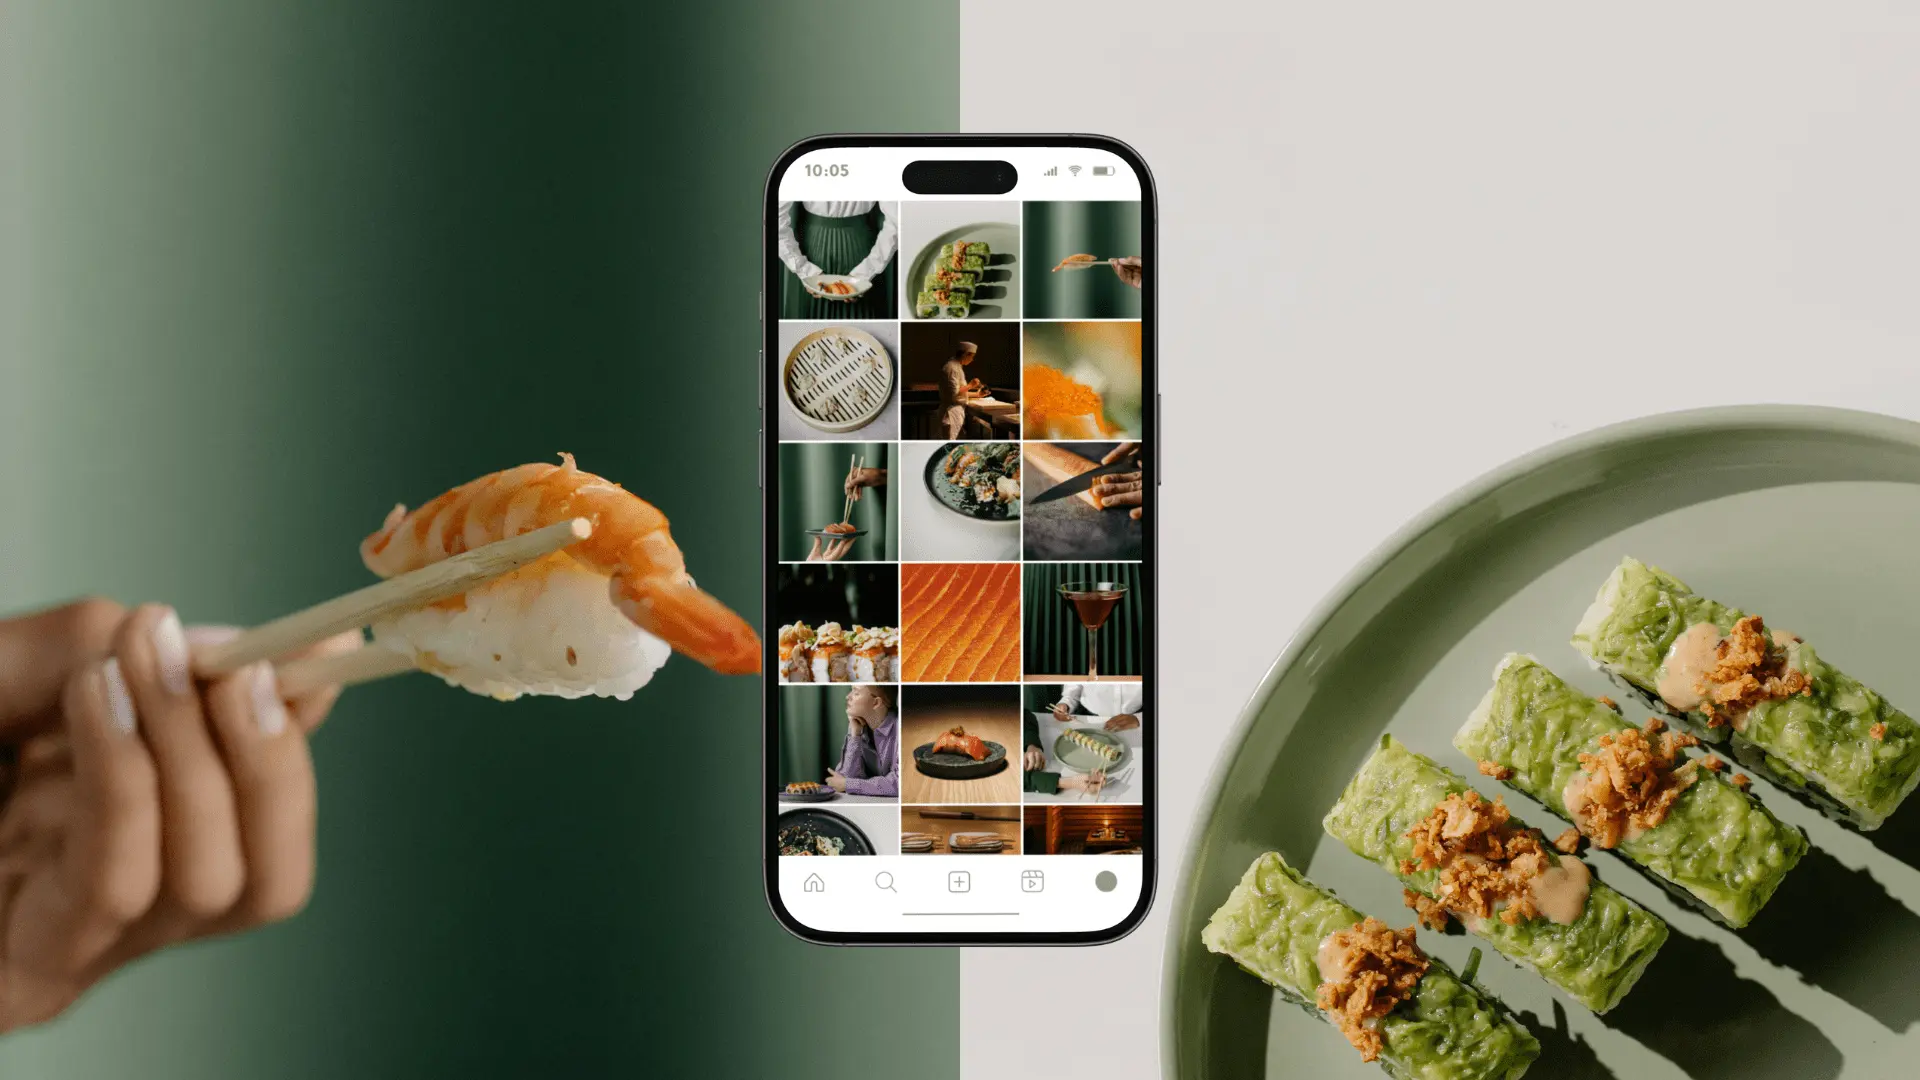 iphone con feed instagram de un restaurante japonés, con imágenes de sushi y sashimi